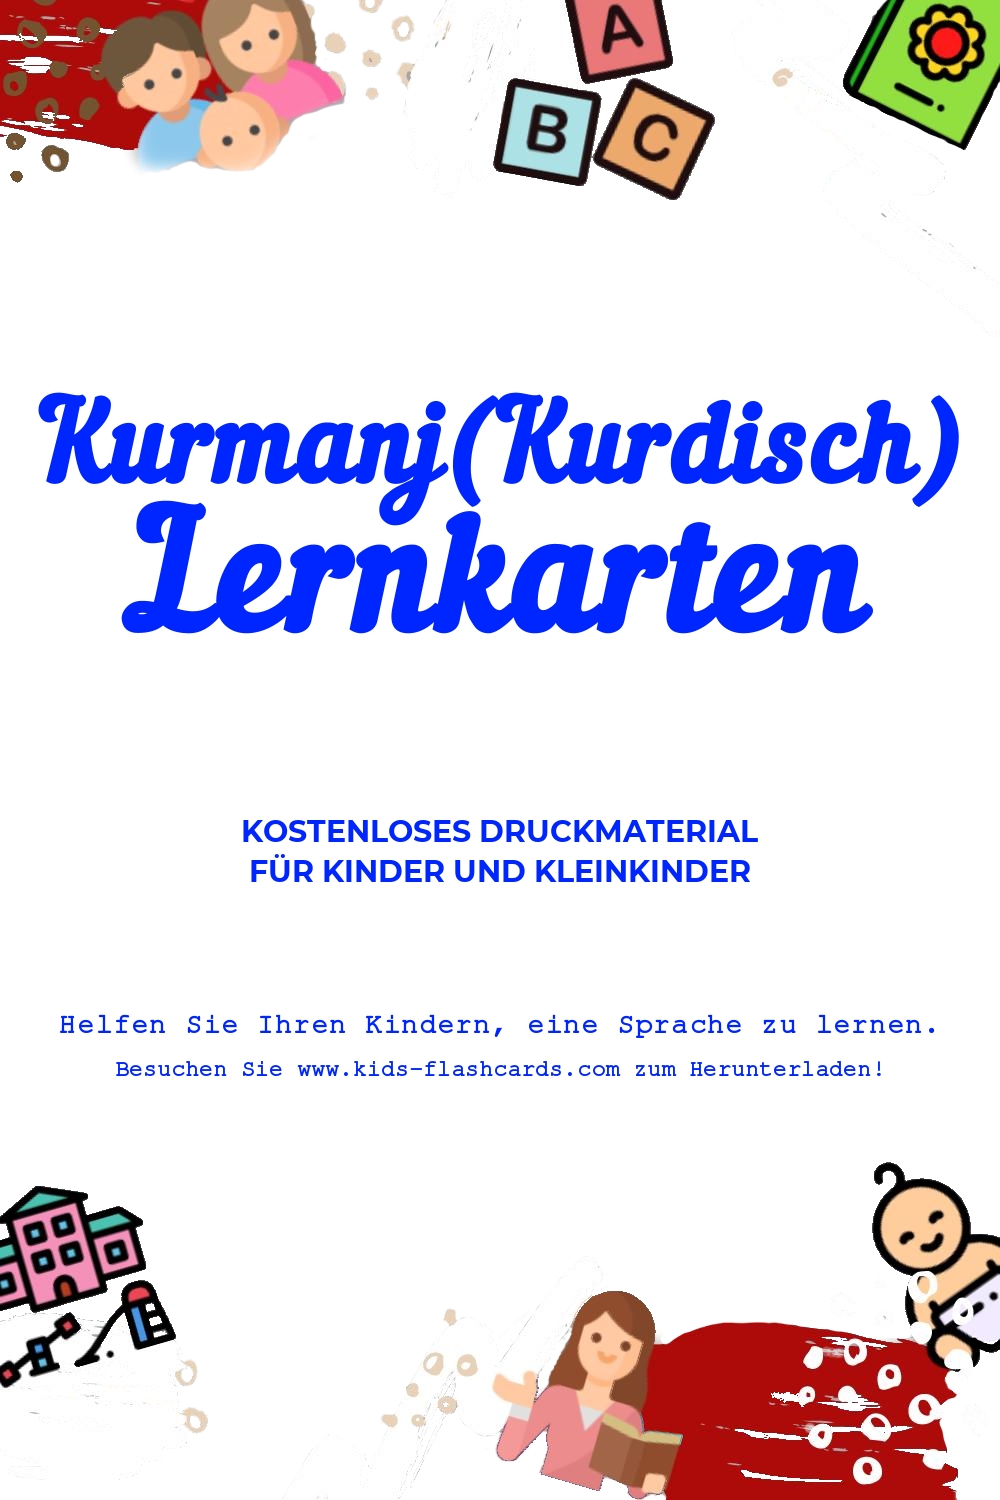 Arbeitsblätter zum Erlernen der Kurmanj(Kurdisch)en Sprache